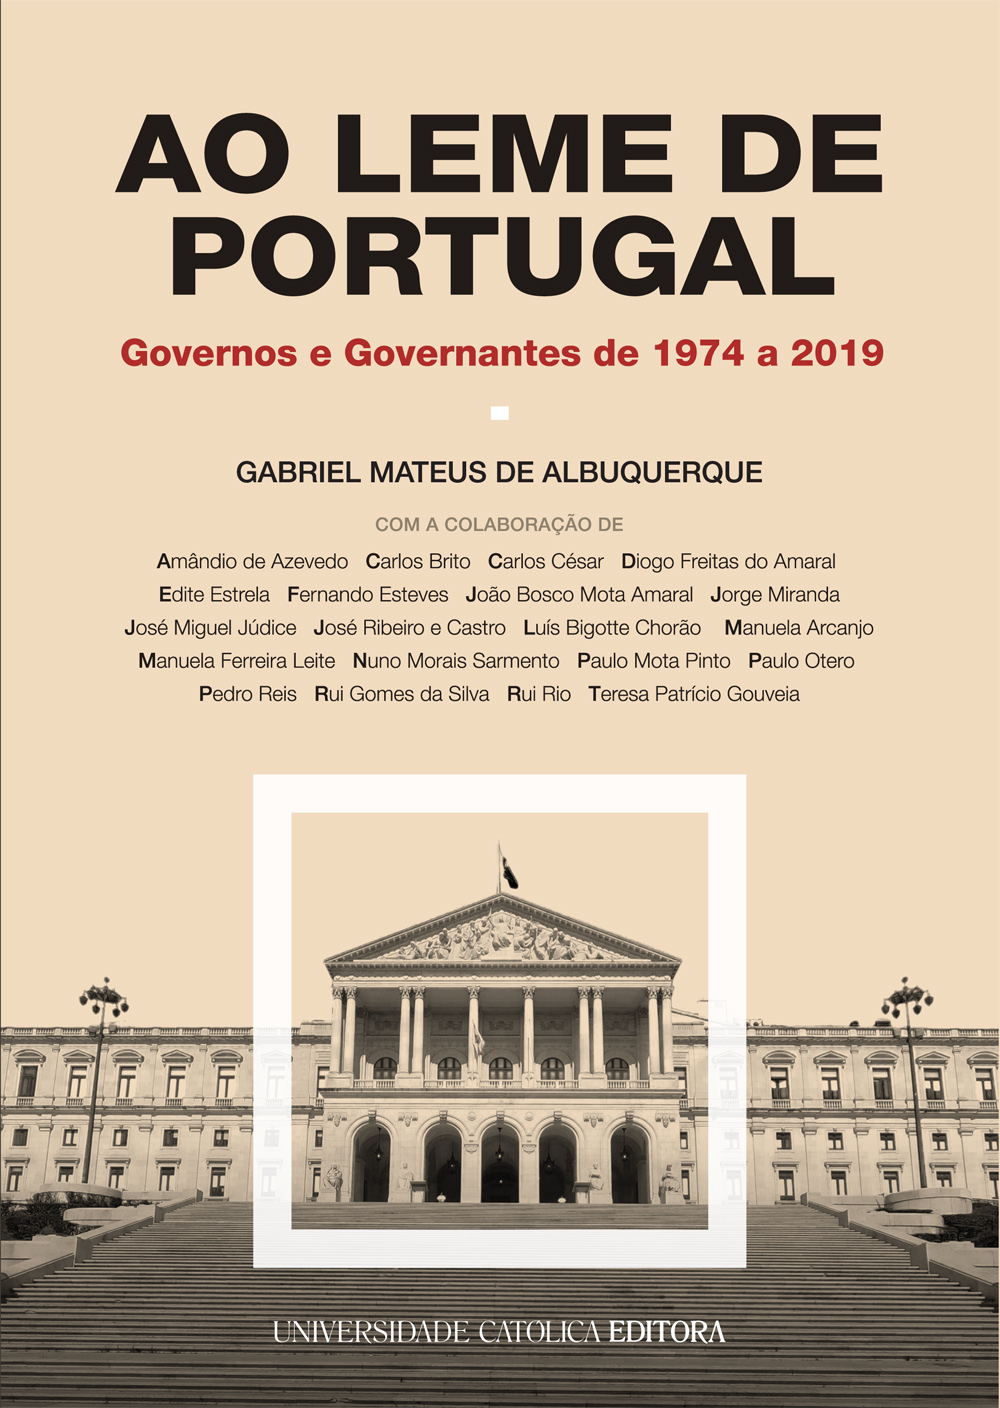 AO LEME DE PORTUGAL - Governos e Governantes de 1974 a 2019